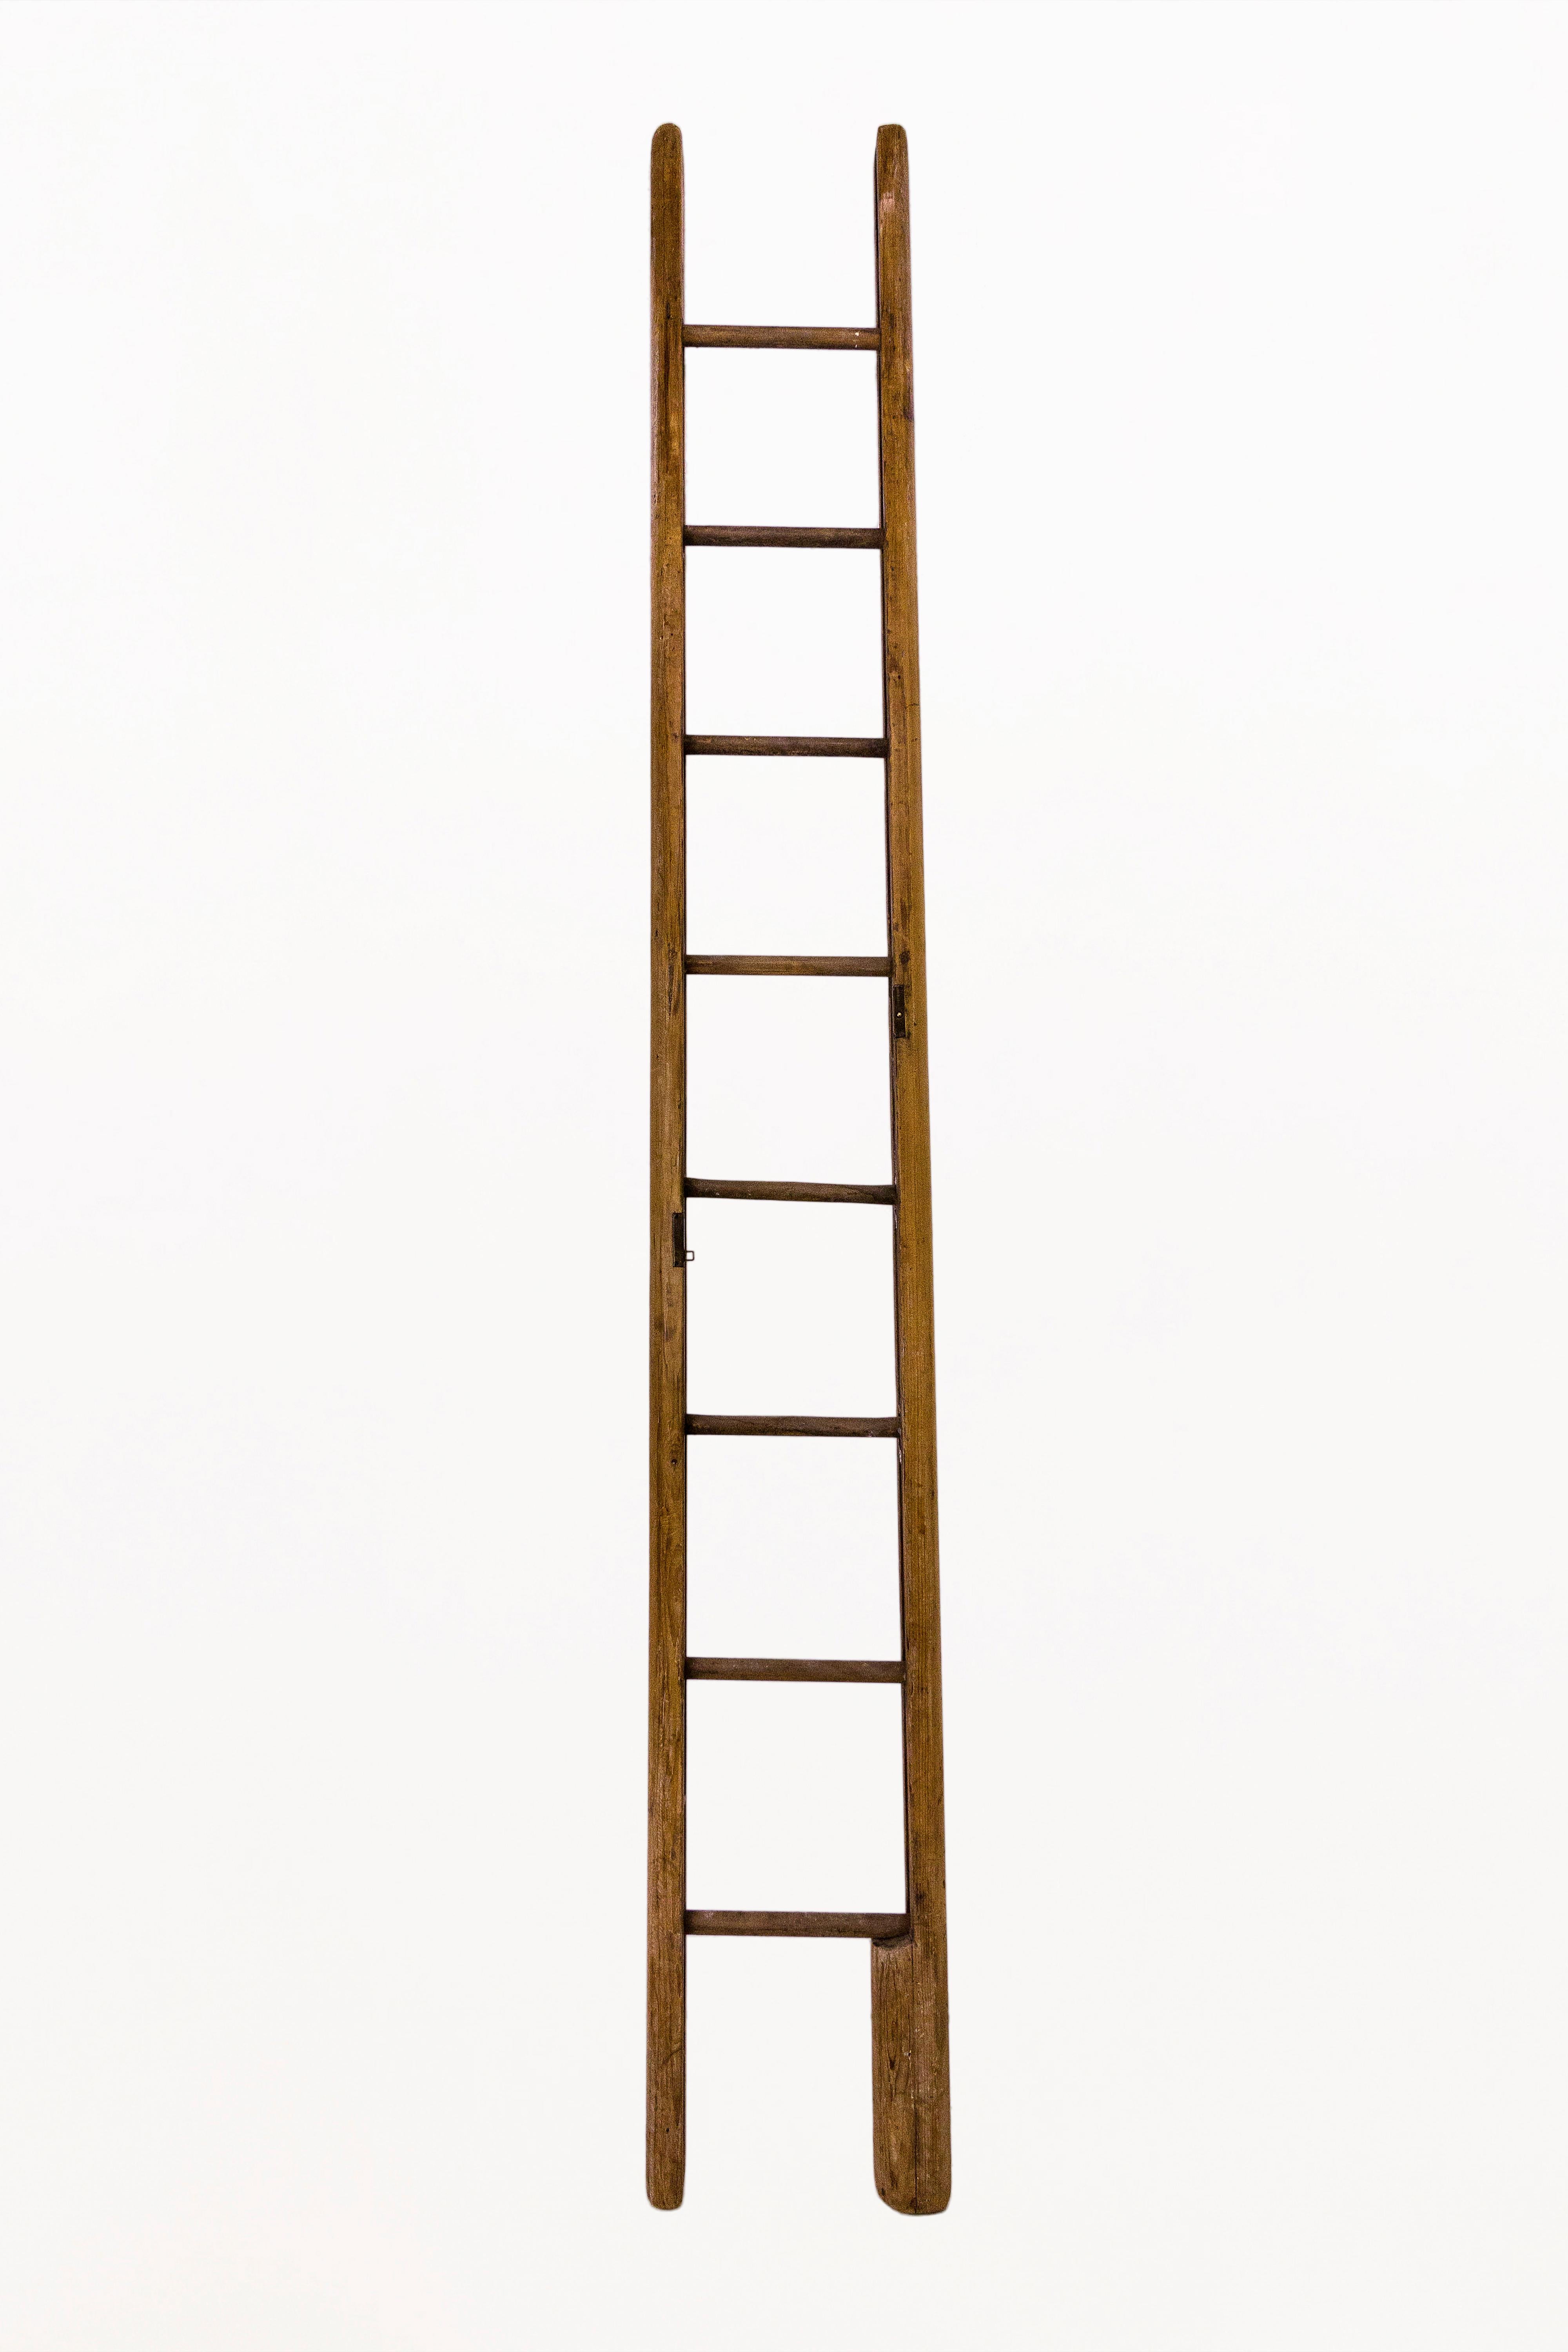 latter vs ladder